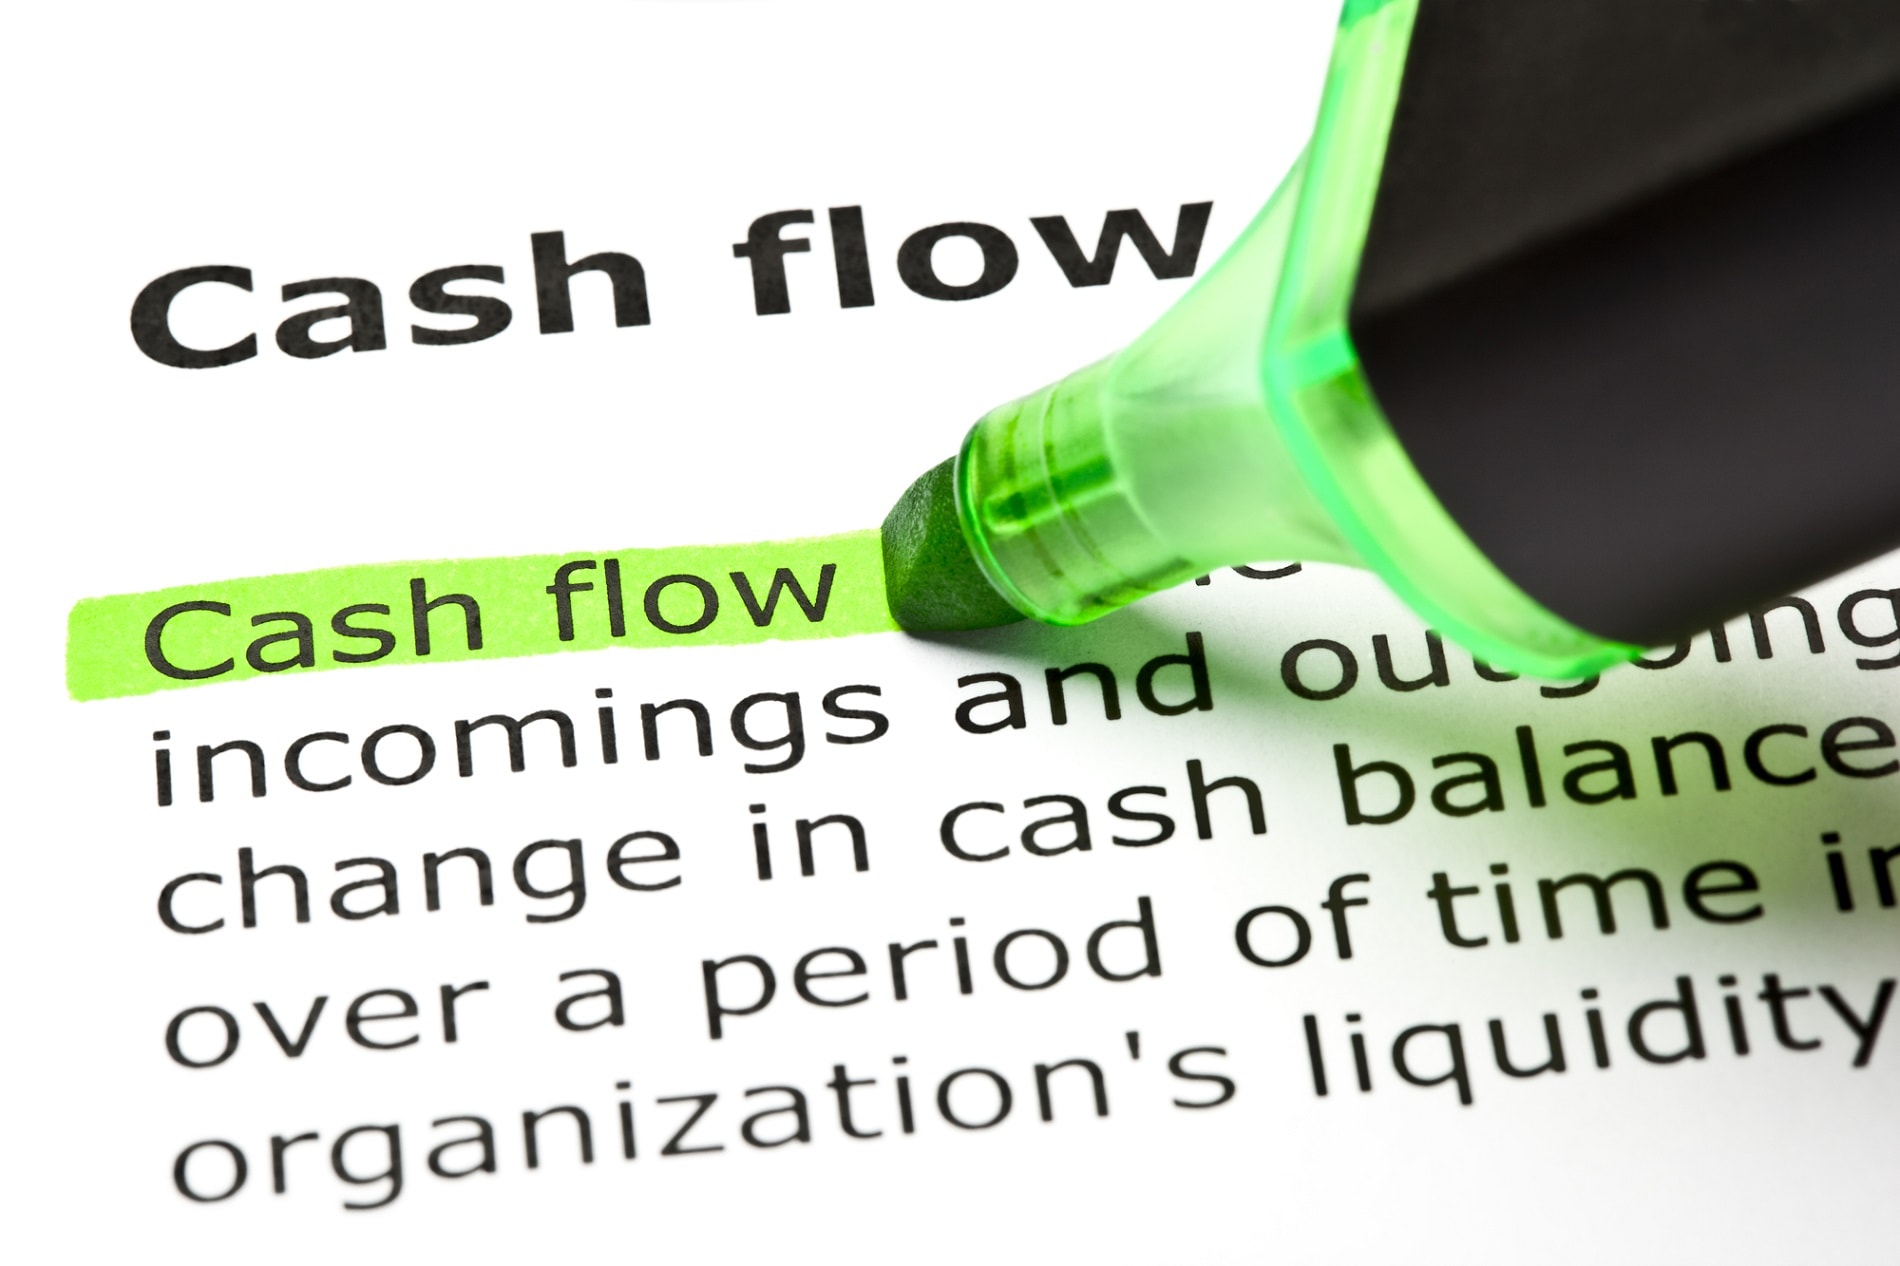 Co ovlivňuje cash flow?